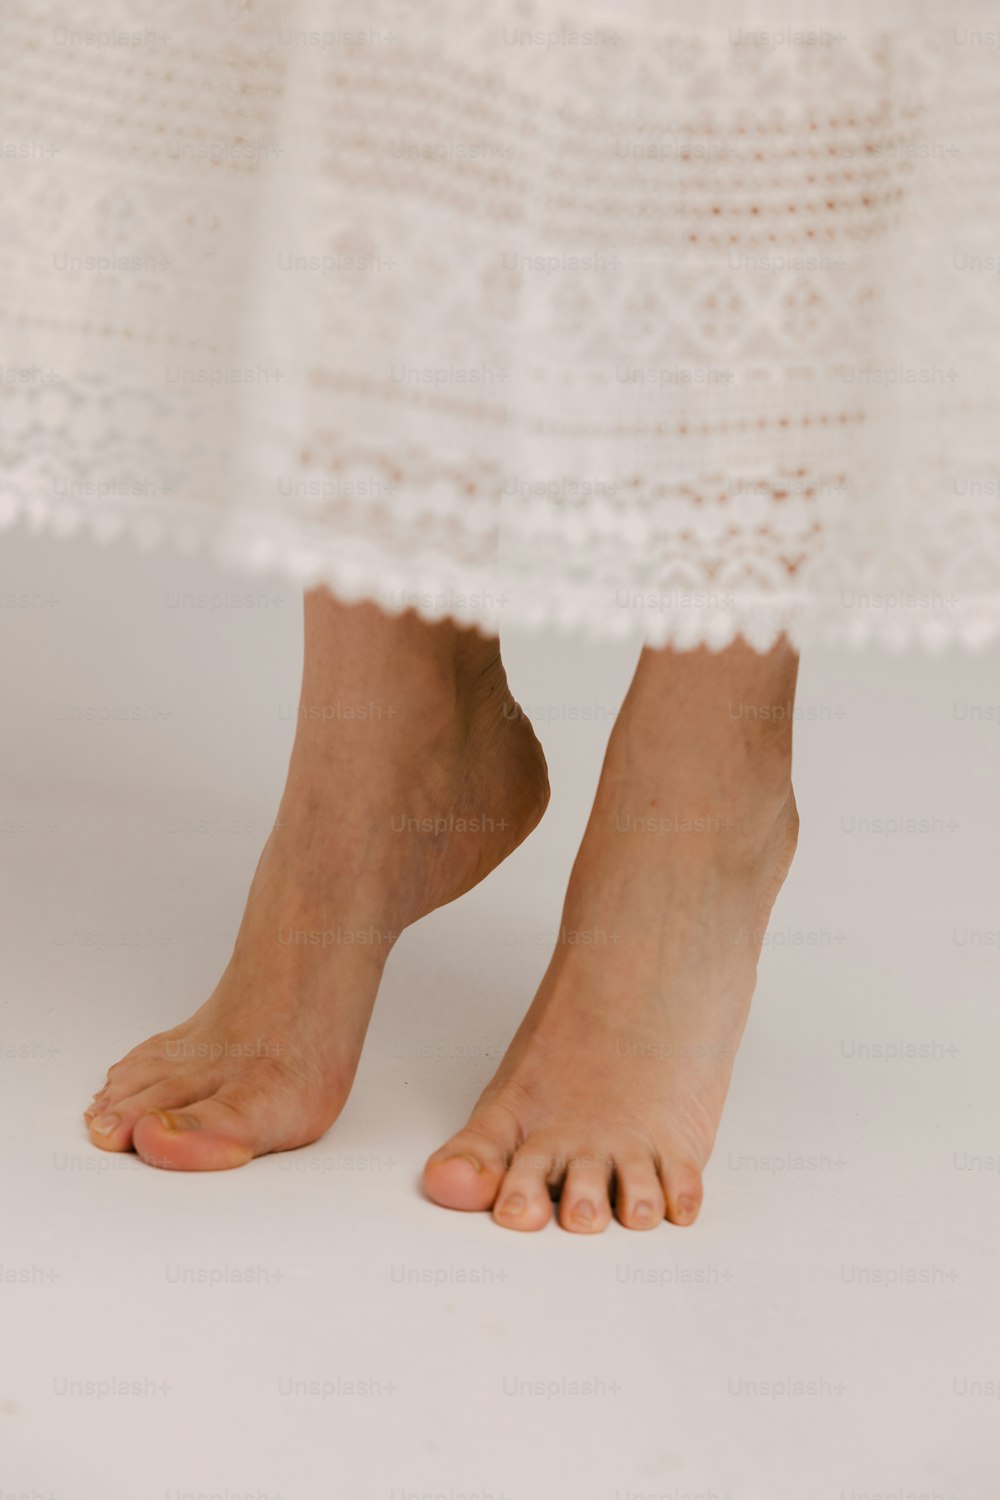 Un primer plano de los pies descalzos de una persona con un vestido blanco